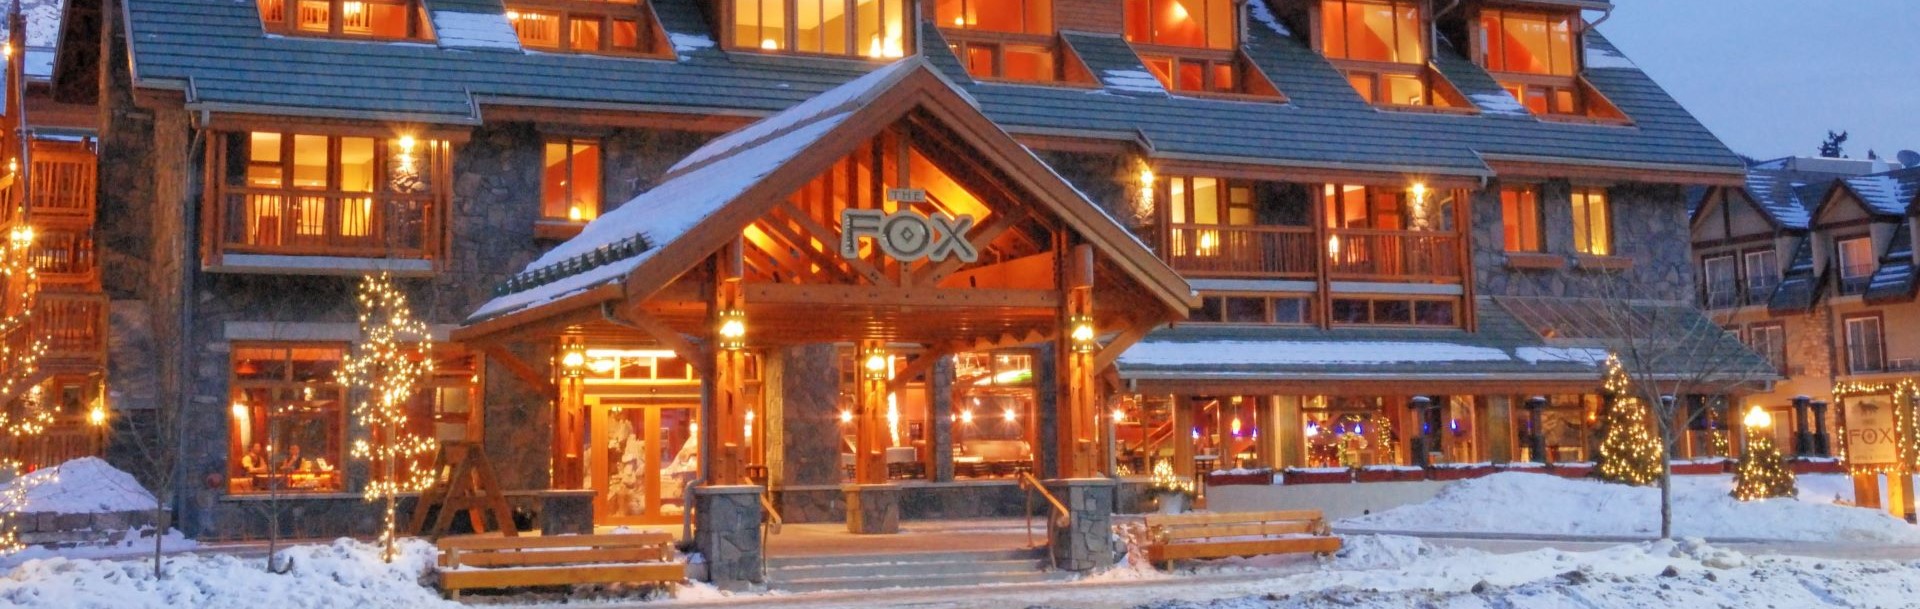 Fox Hotel & Suites, Banff